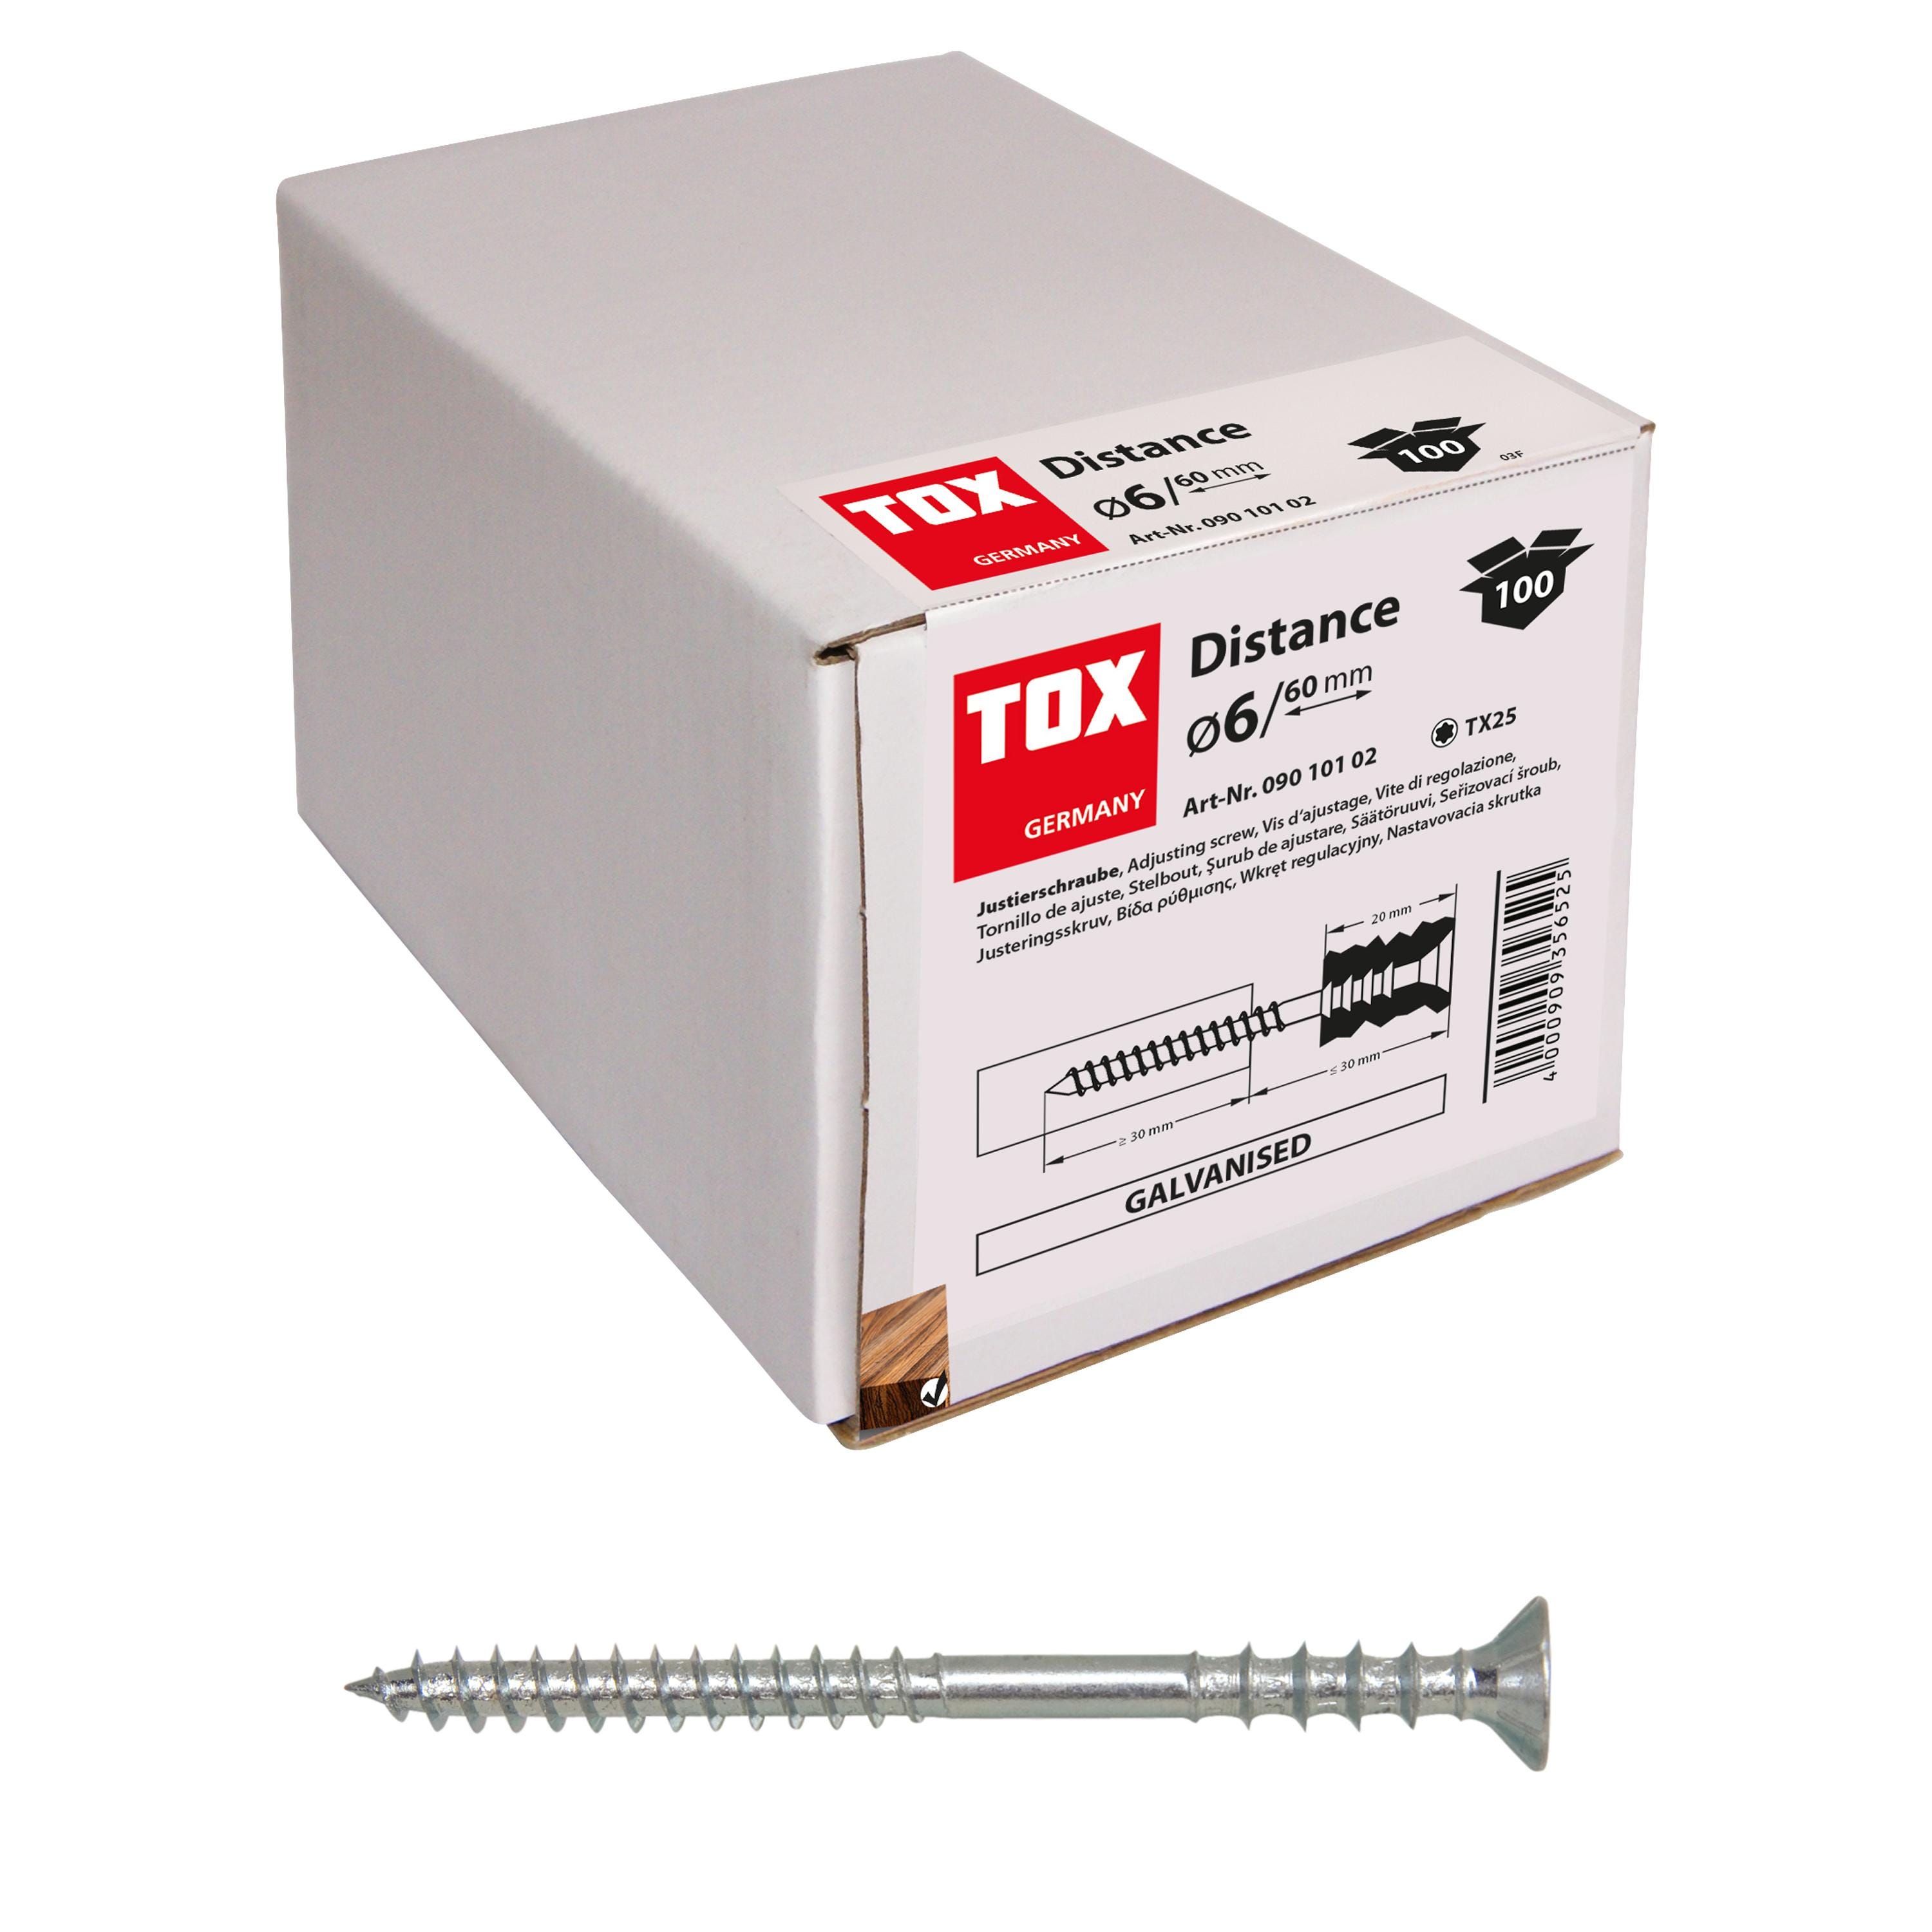 Caja de 100 tornillos distanciadores JS-S Distance (6/80) Tox 09010104